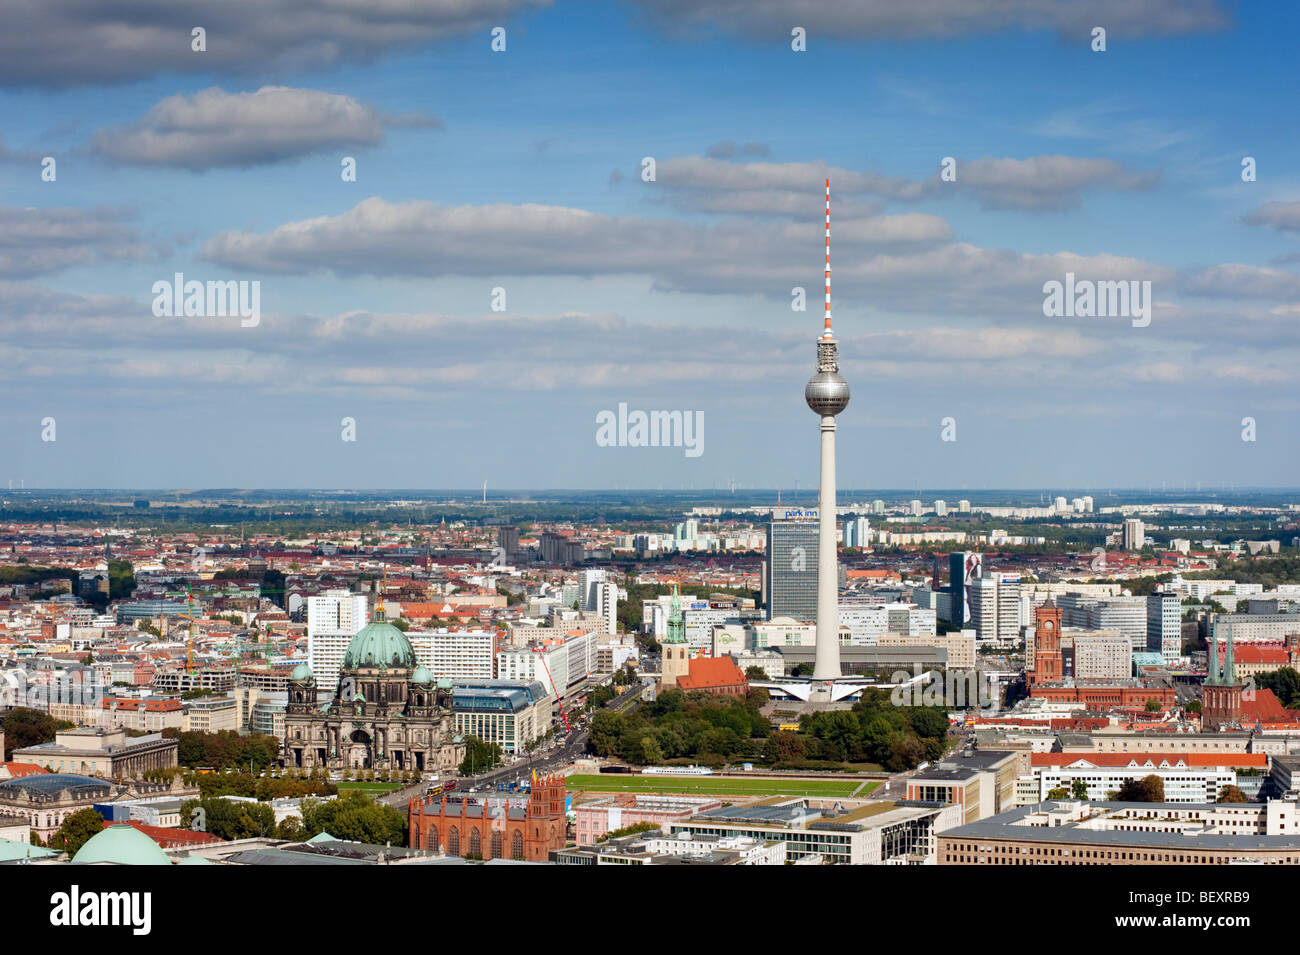 Cityscape de Mitte à Berlin avec tour de télévision de l'Alexanderplatz Banque D'Images